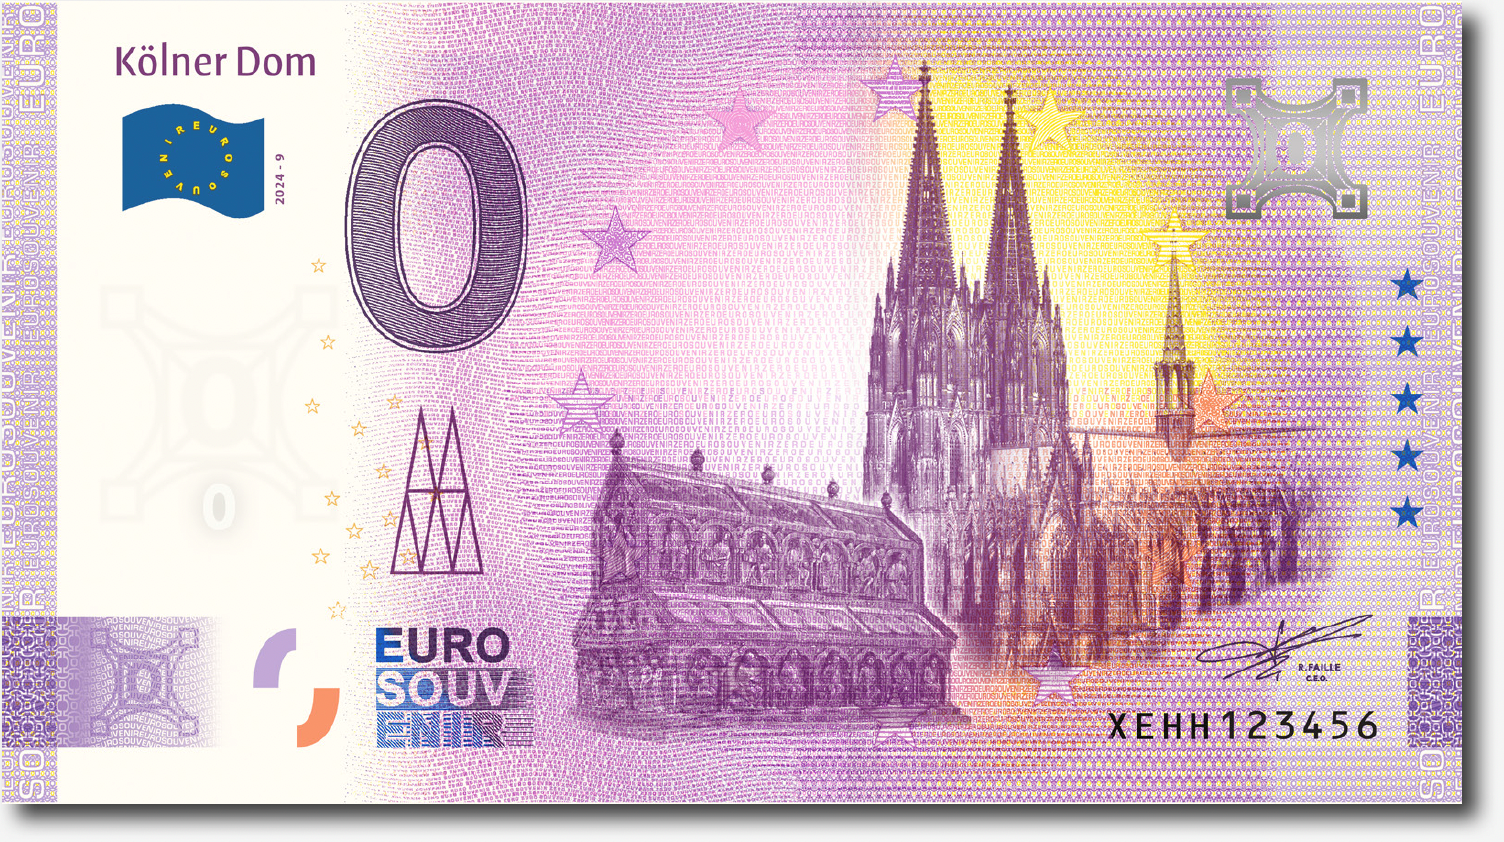 Euroschein Kölner Dom